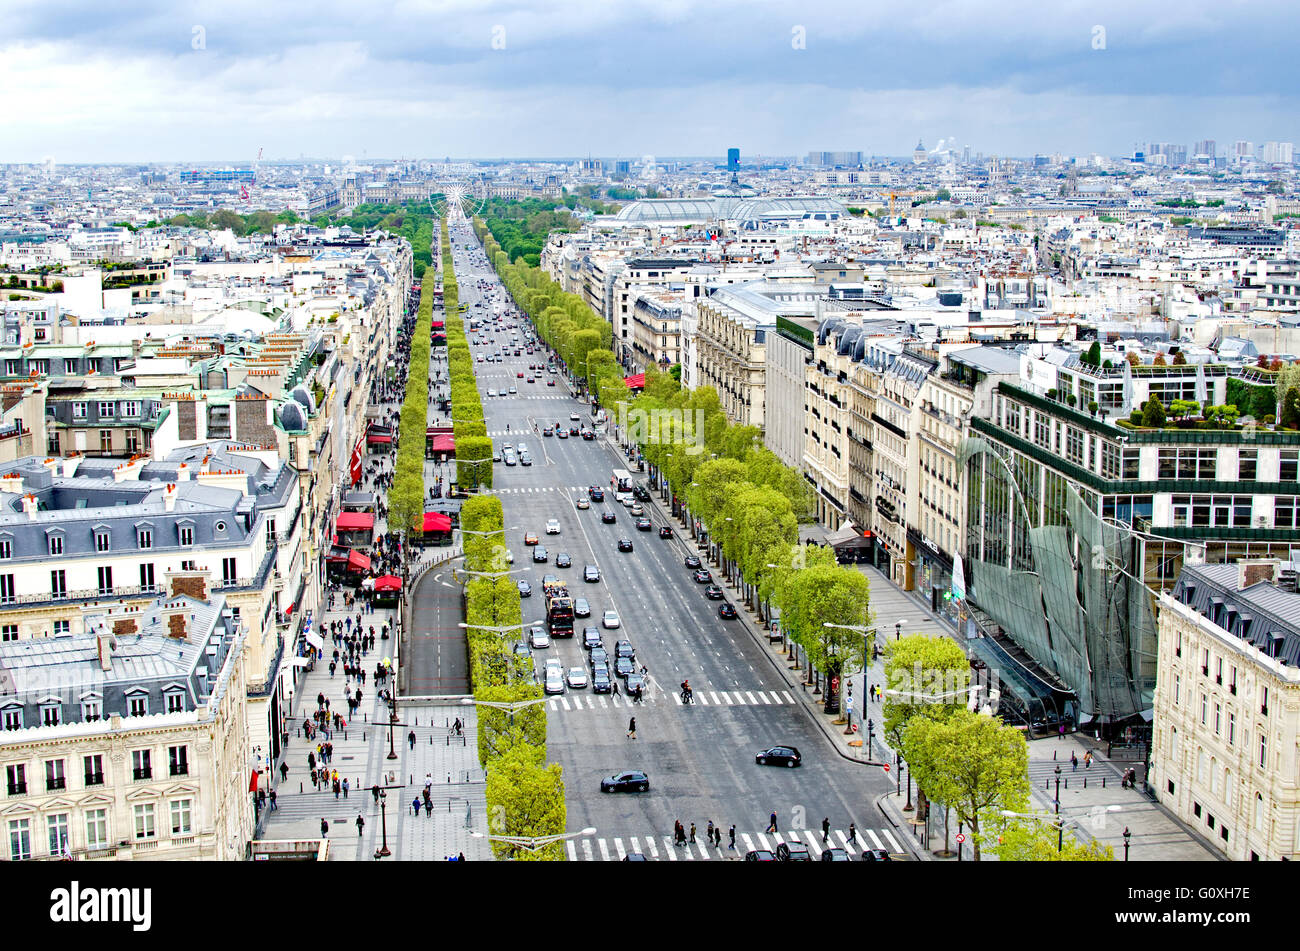 Avenue des Champs-Élysées - Wikimedia Commons